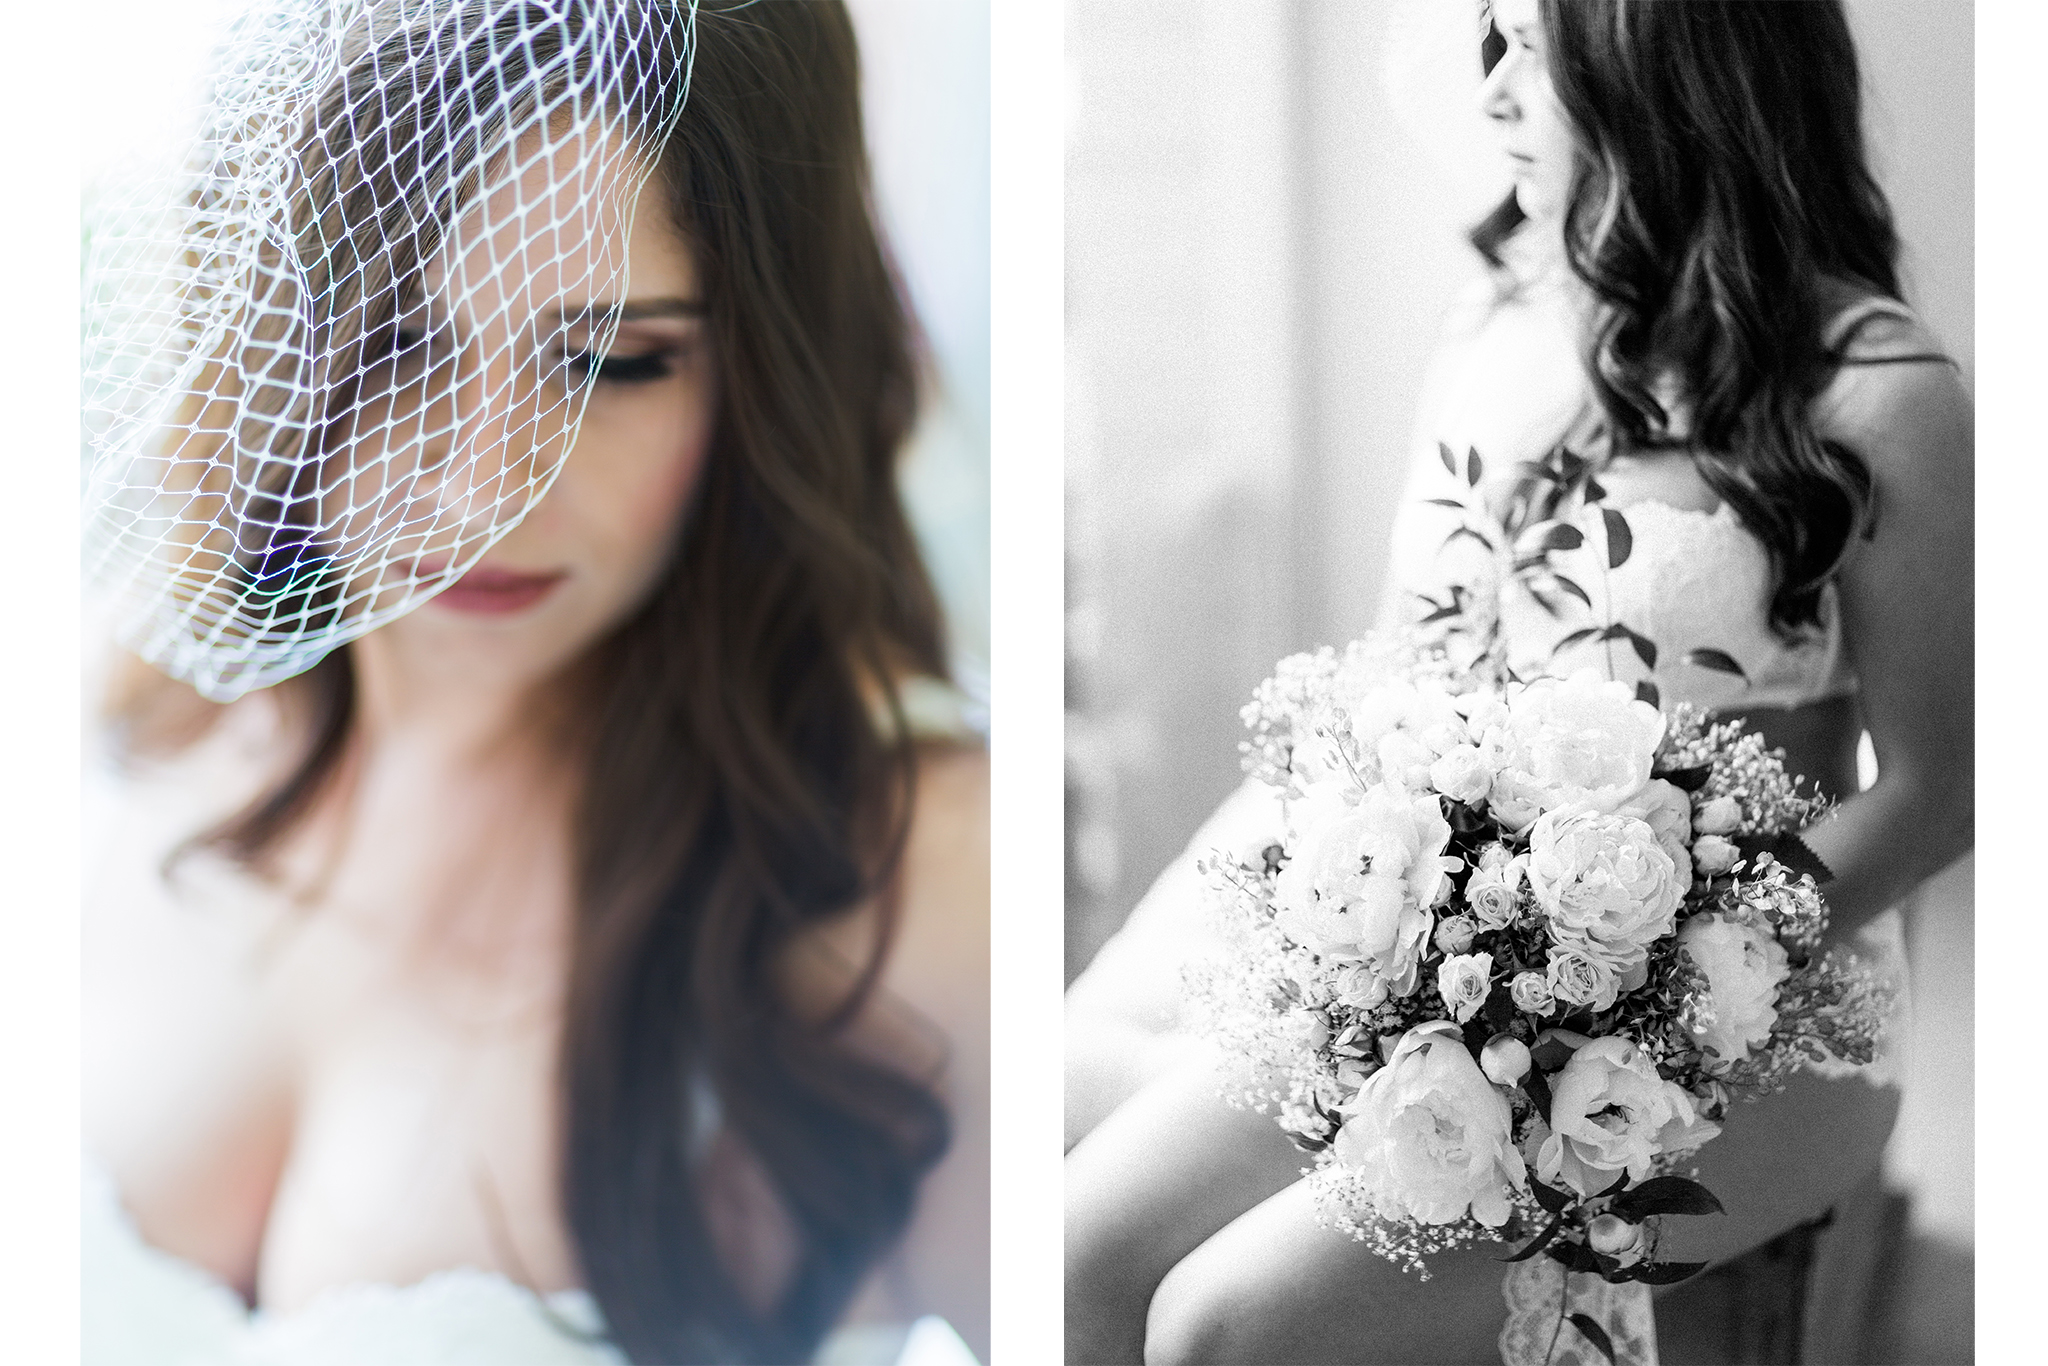 Wunderschöne Bridal Boudoir-Shooting-Inspiration mit brünetter Schönheit als Geschenk für den zukünftigen Ehemann in weißen Dessous mit Blumen.